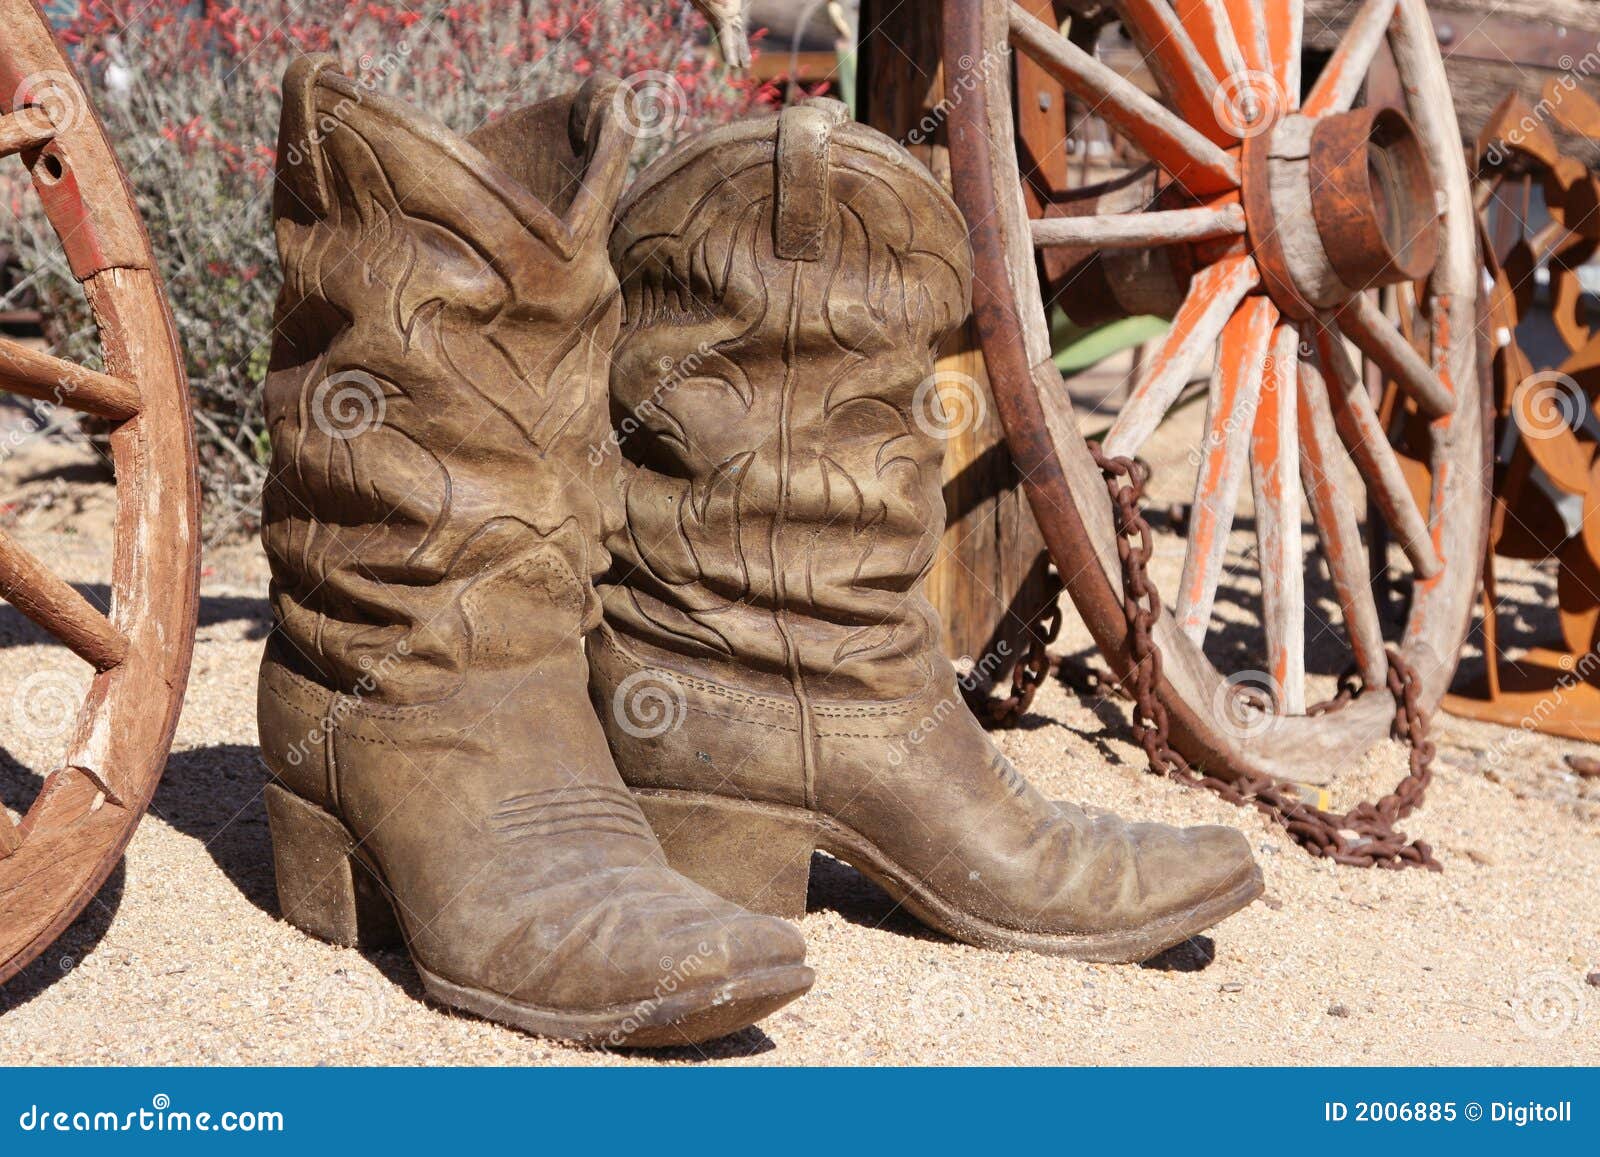 ceramic cowboy boots